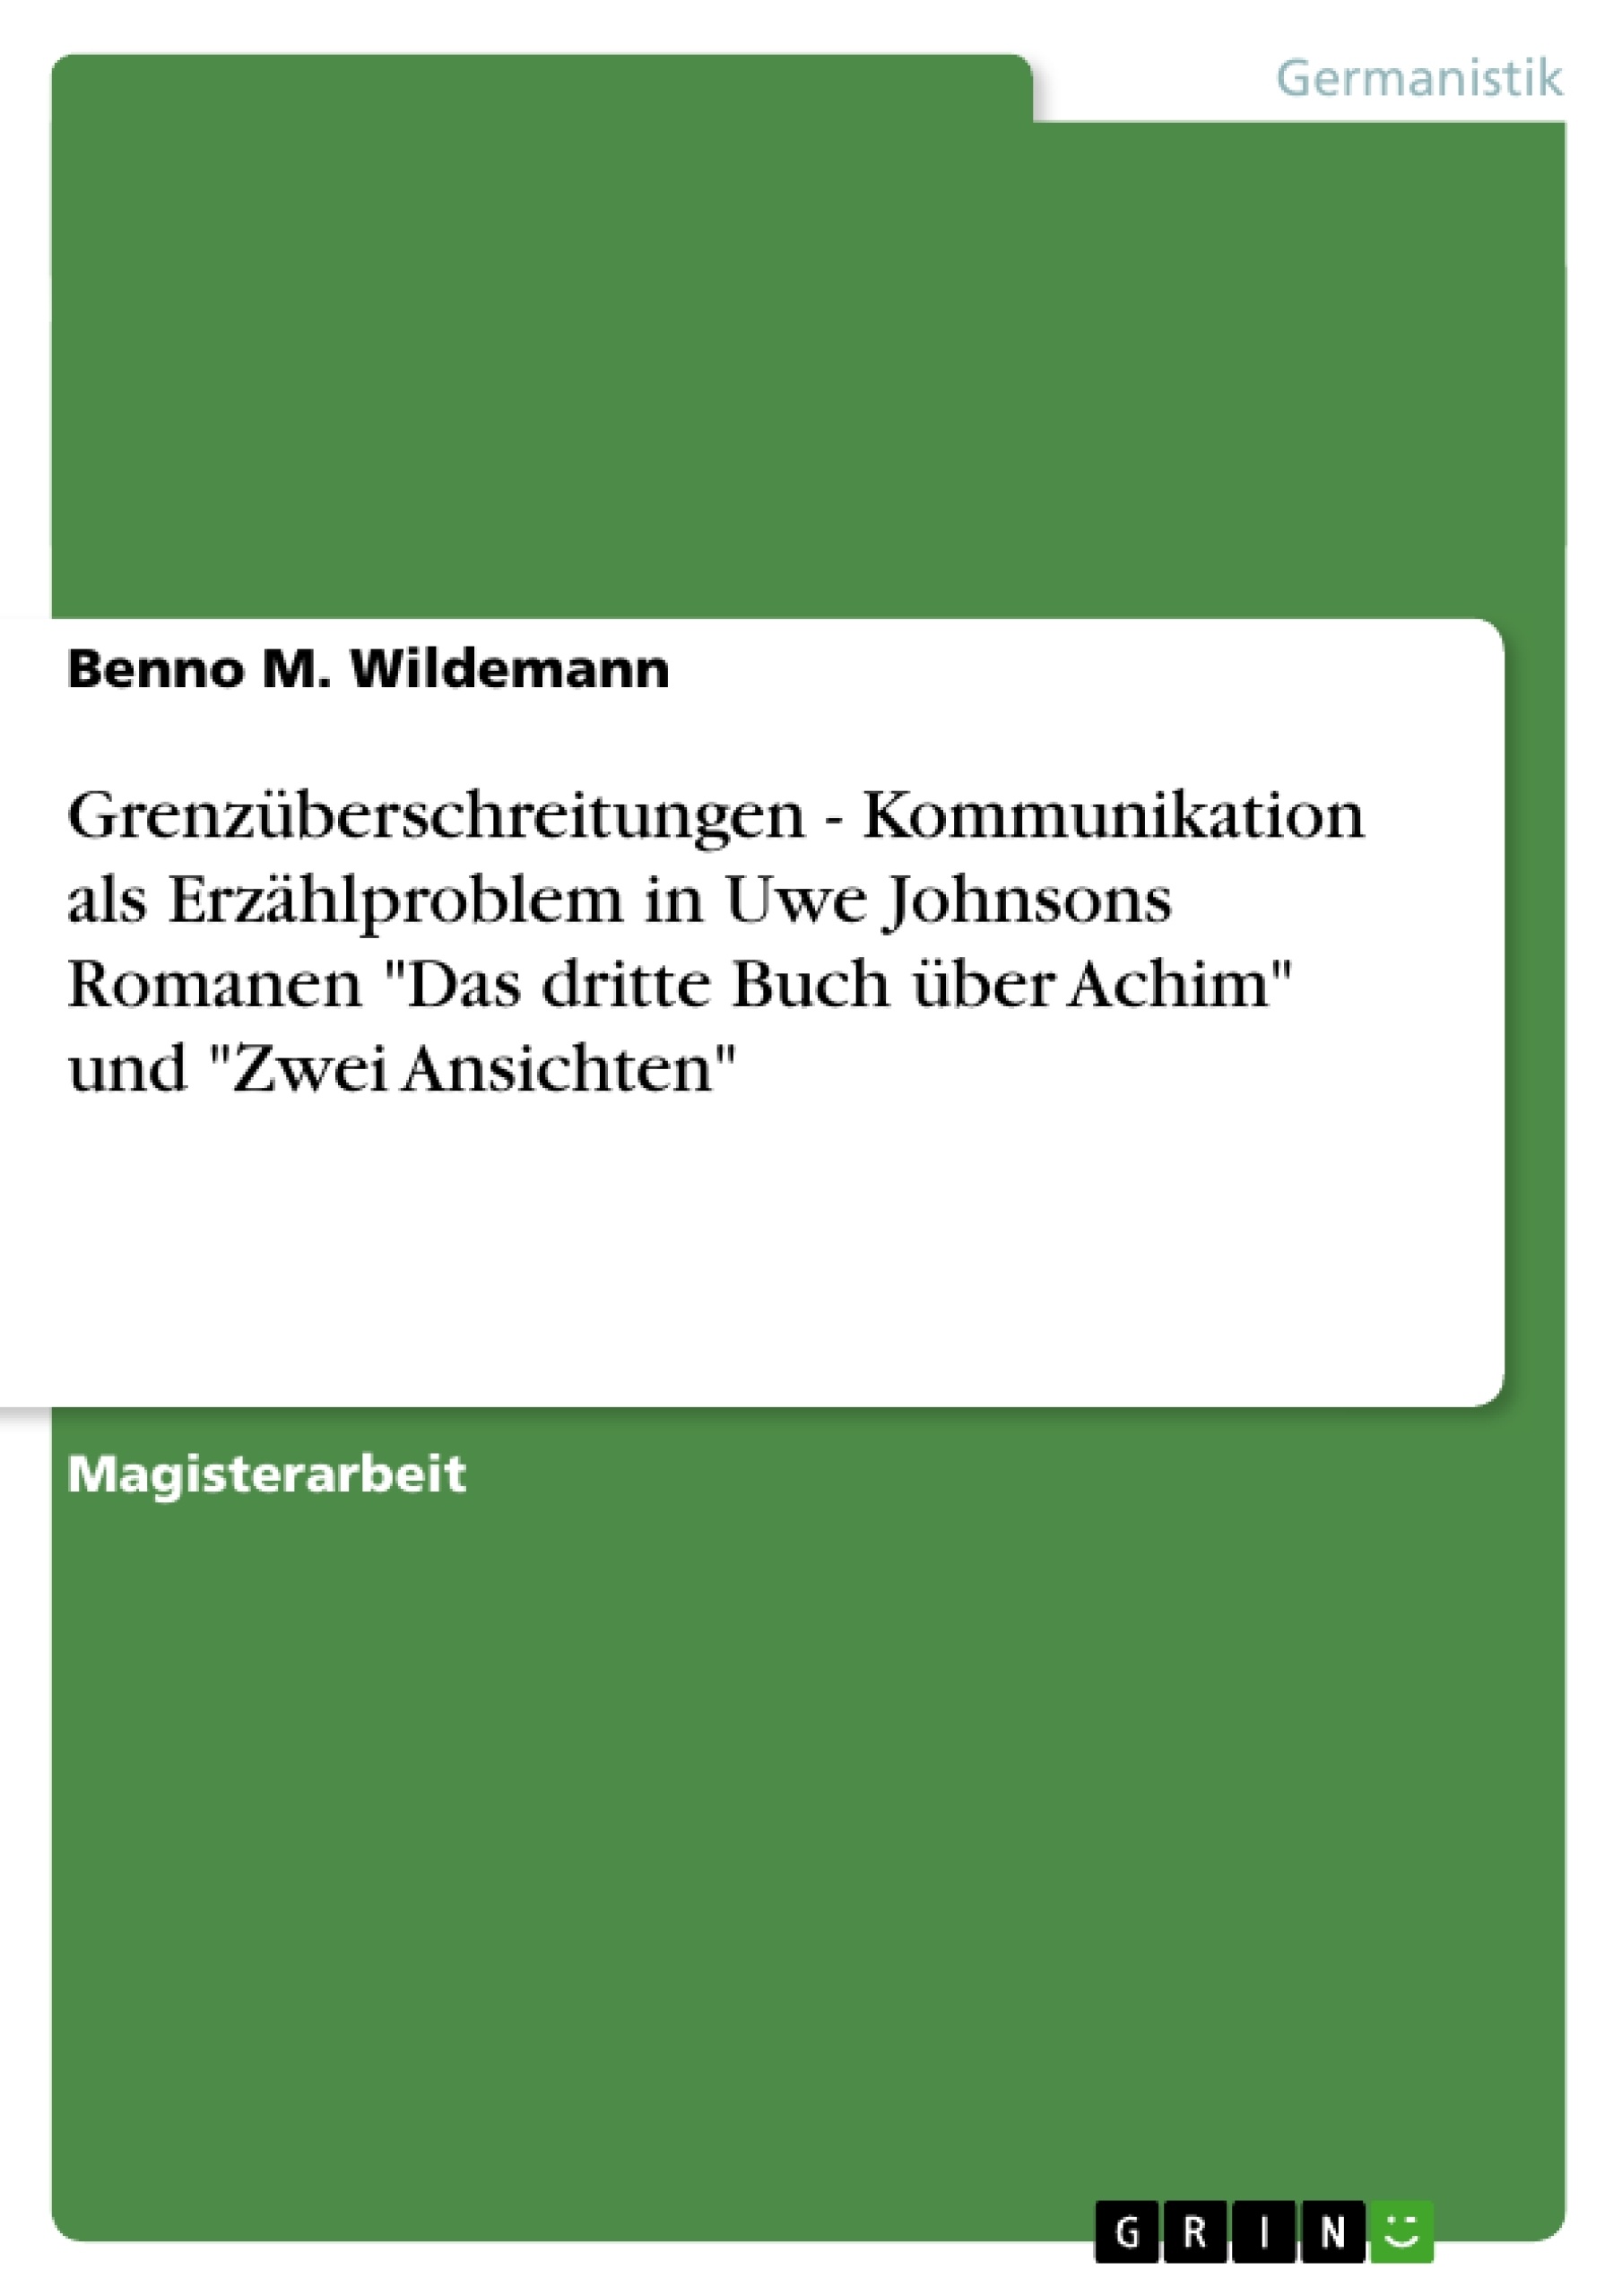 Titel: Grenzüberschreitungen - Kommunikation als Erzählproblem in Uwe Johnsons Romanen "Das dritte Buch über Achim" und "Zwei Ansichten"